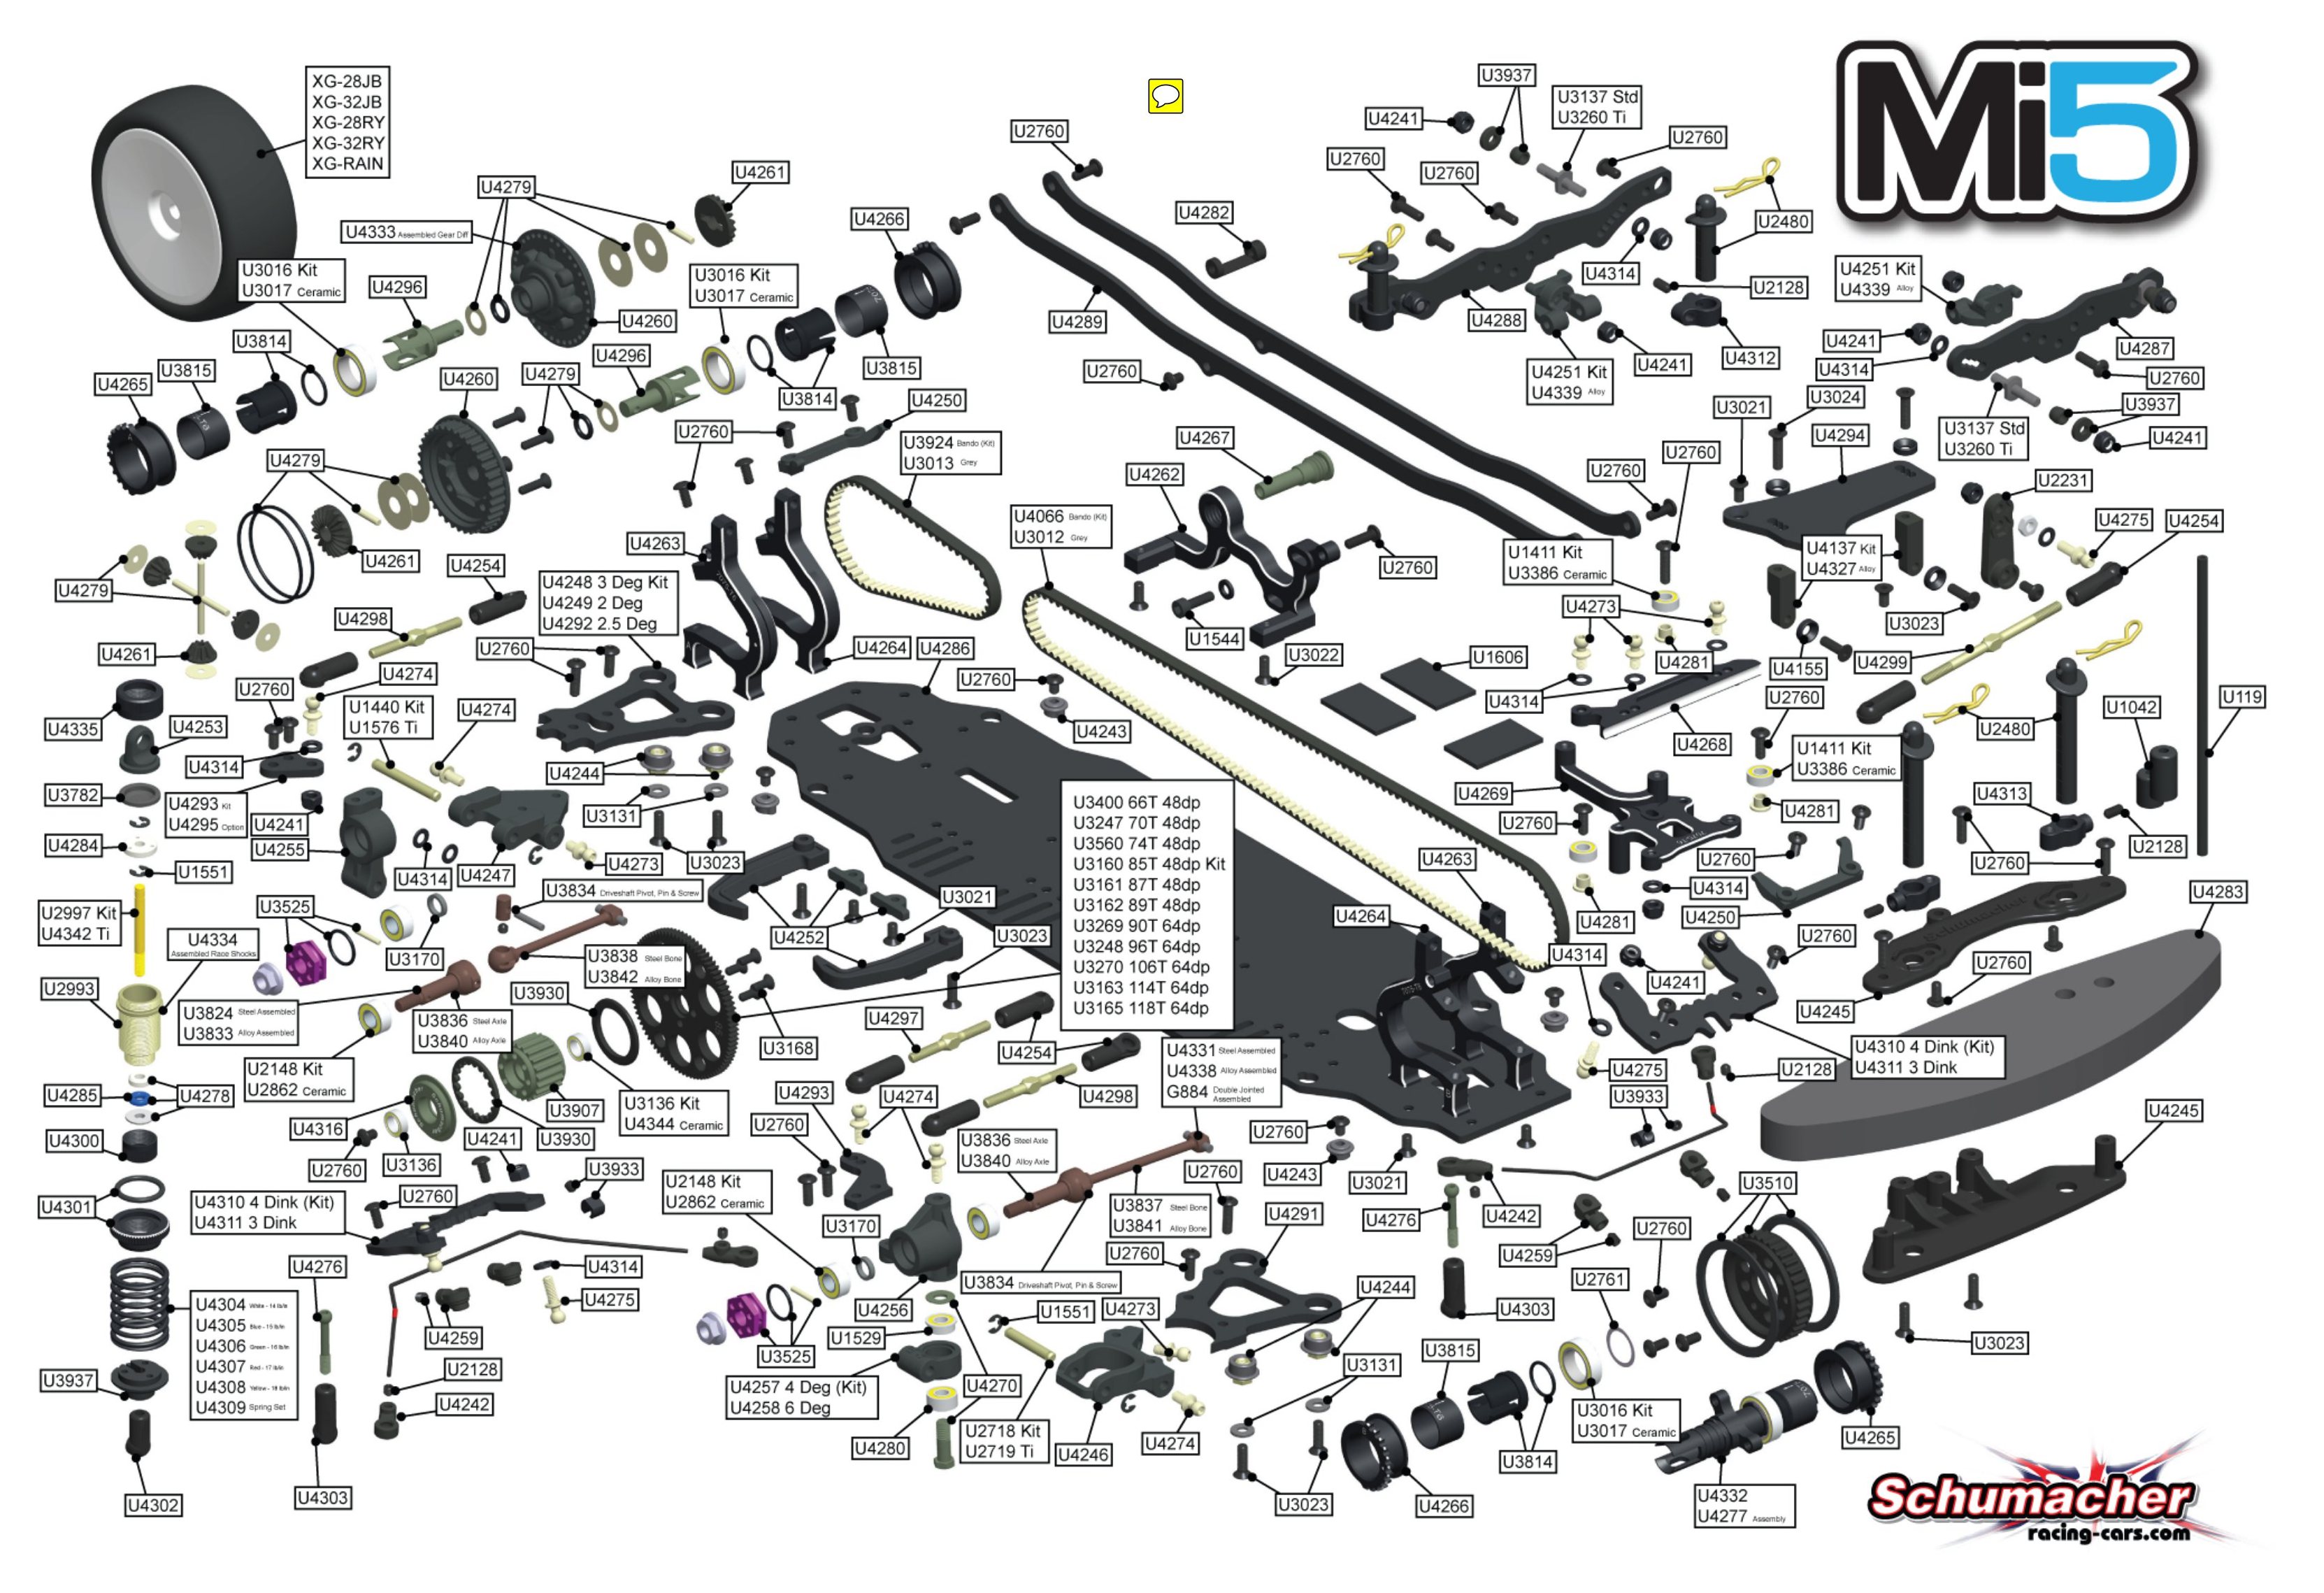 Schumacher - Mi5 - Exploded View